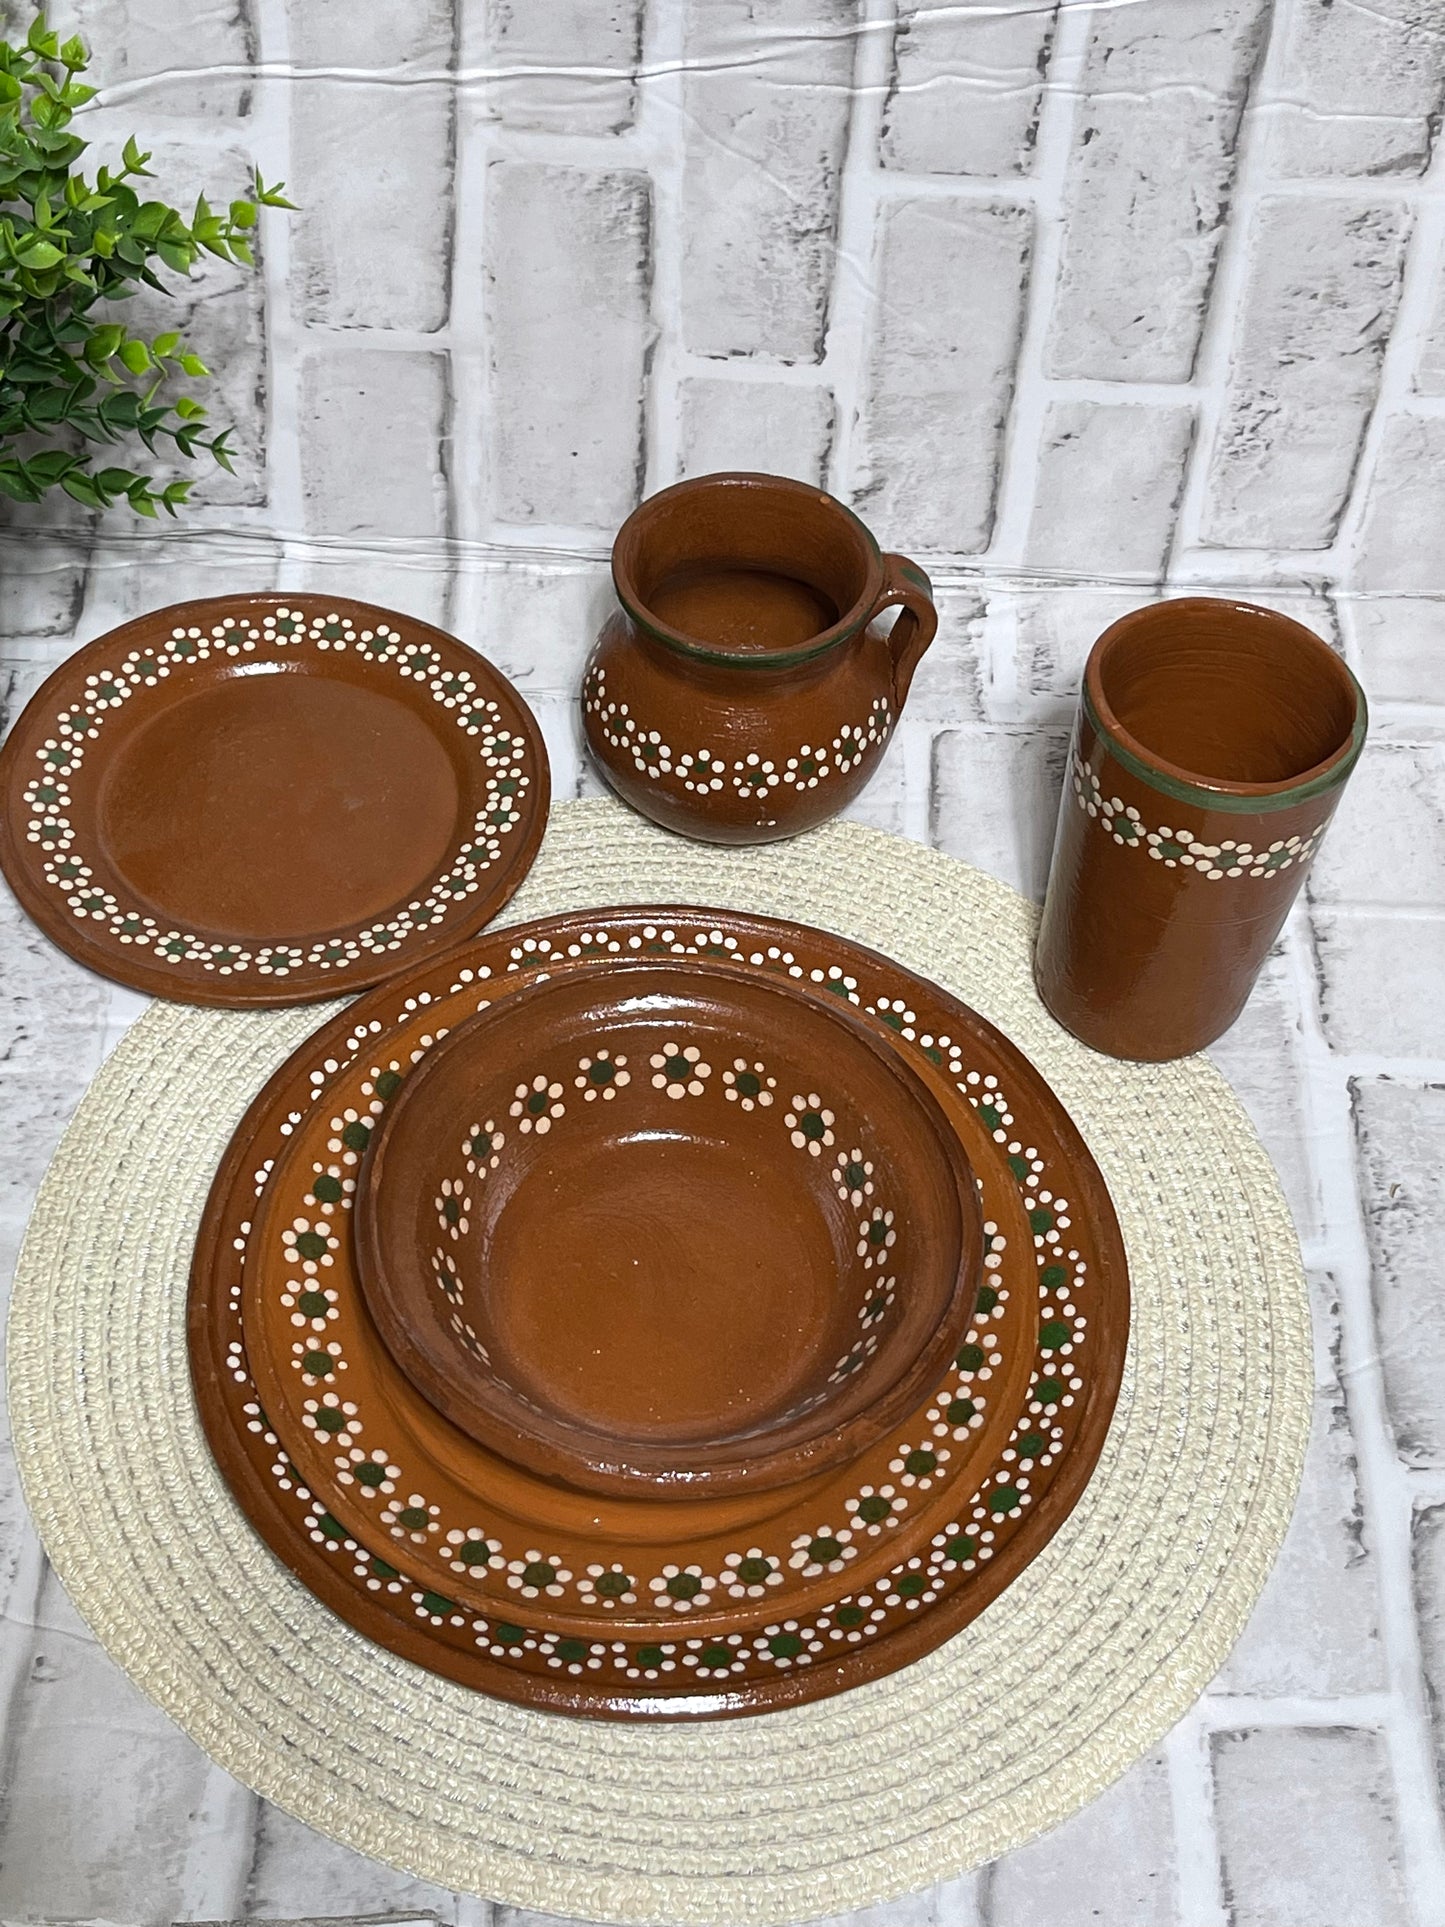 Rustic Handcrafted Mexico terracotta dinnerware- vajilla de barro hecho a mano.